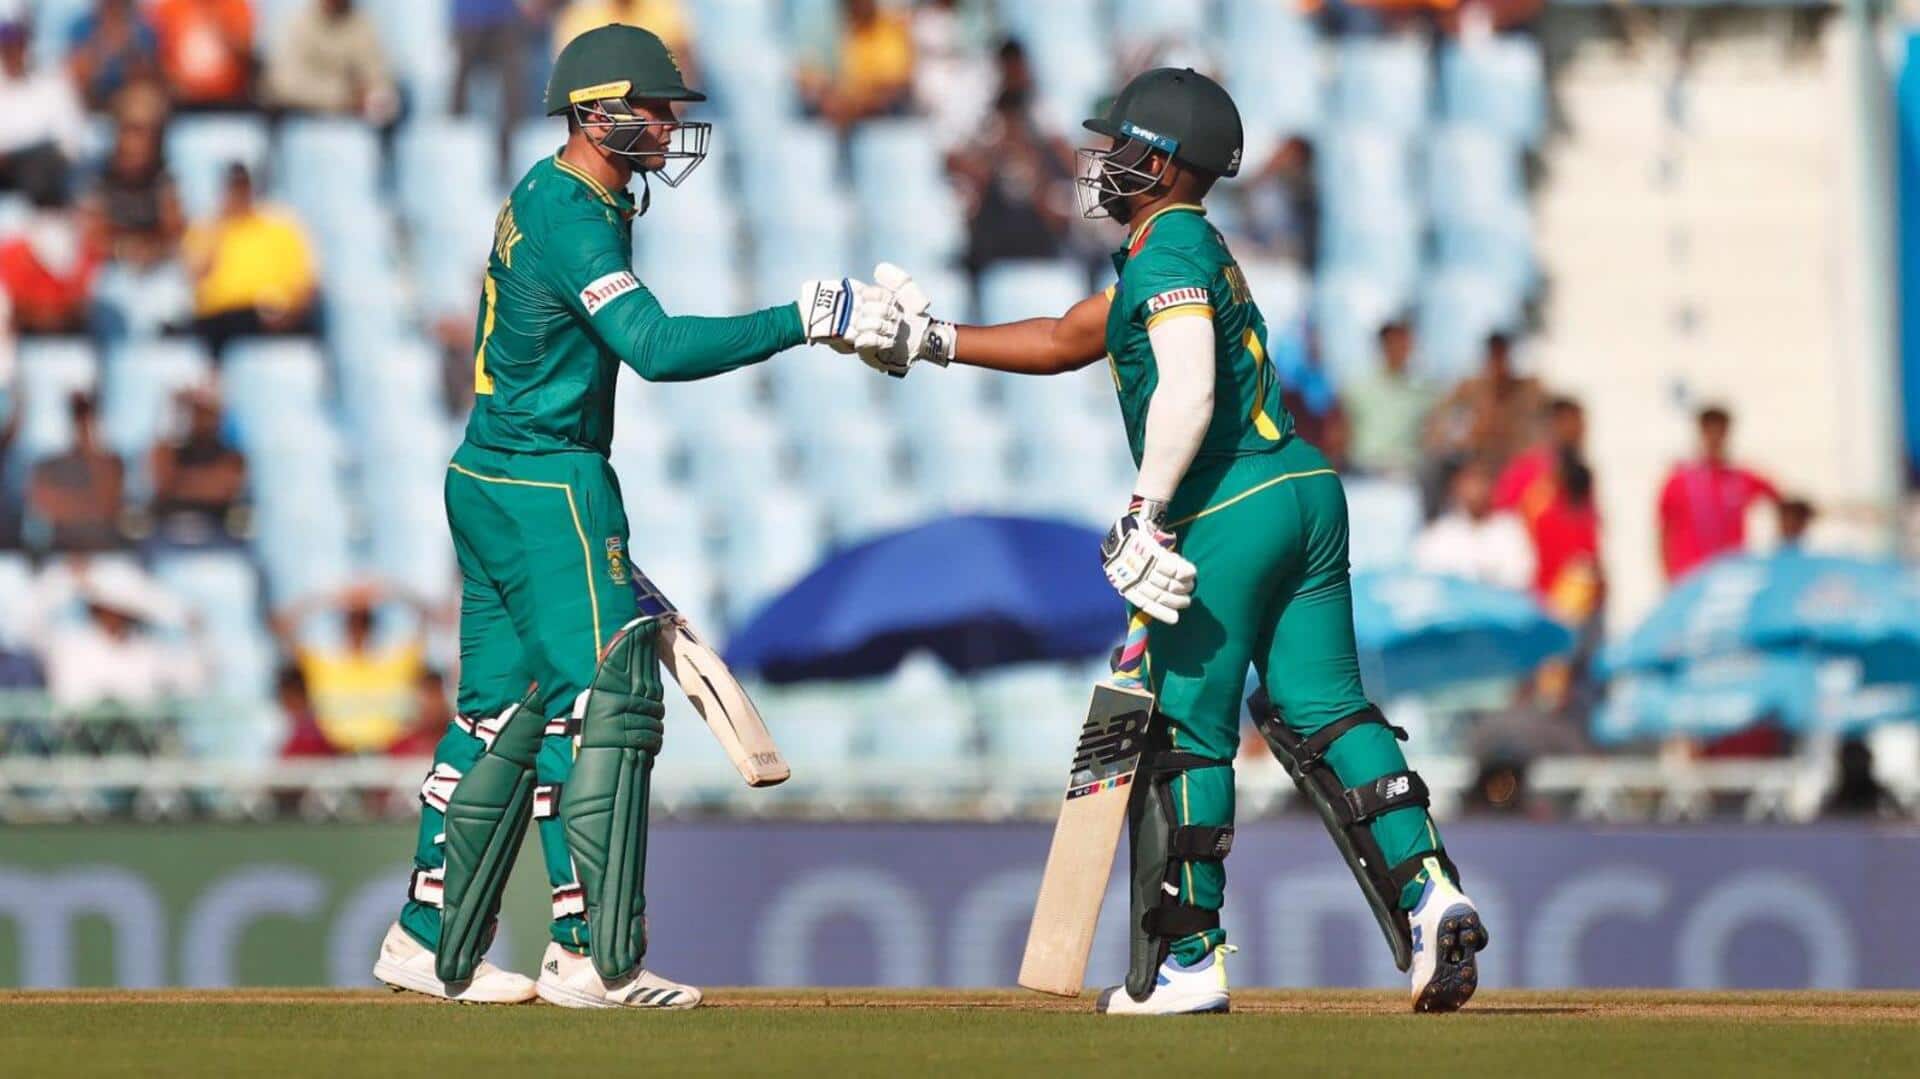 वनडे विश्व कप: दक्षिण अफ्रीका ने ऑस्ट्रेलिया को दिया 312 रनों का लक्ष्य, डिकॉक का शतक 